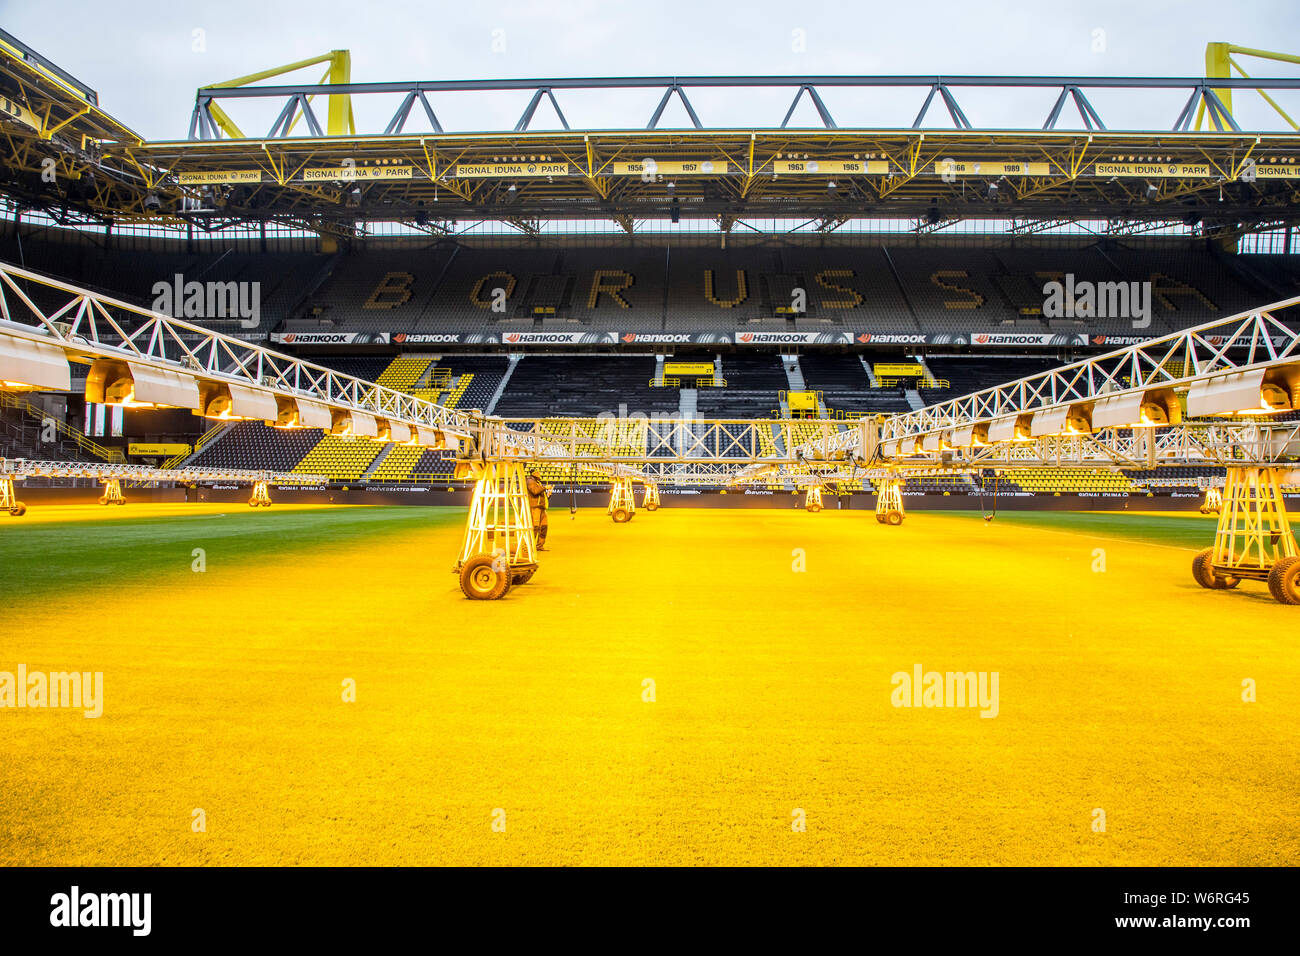 Westfalenstadion Signal-Iduna-Park, el estadio de fútbol de BVB Borussia Dortmund, el césped del campo está iluminada con lámparas especiales, para el cuidado del césped Foto de stock